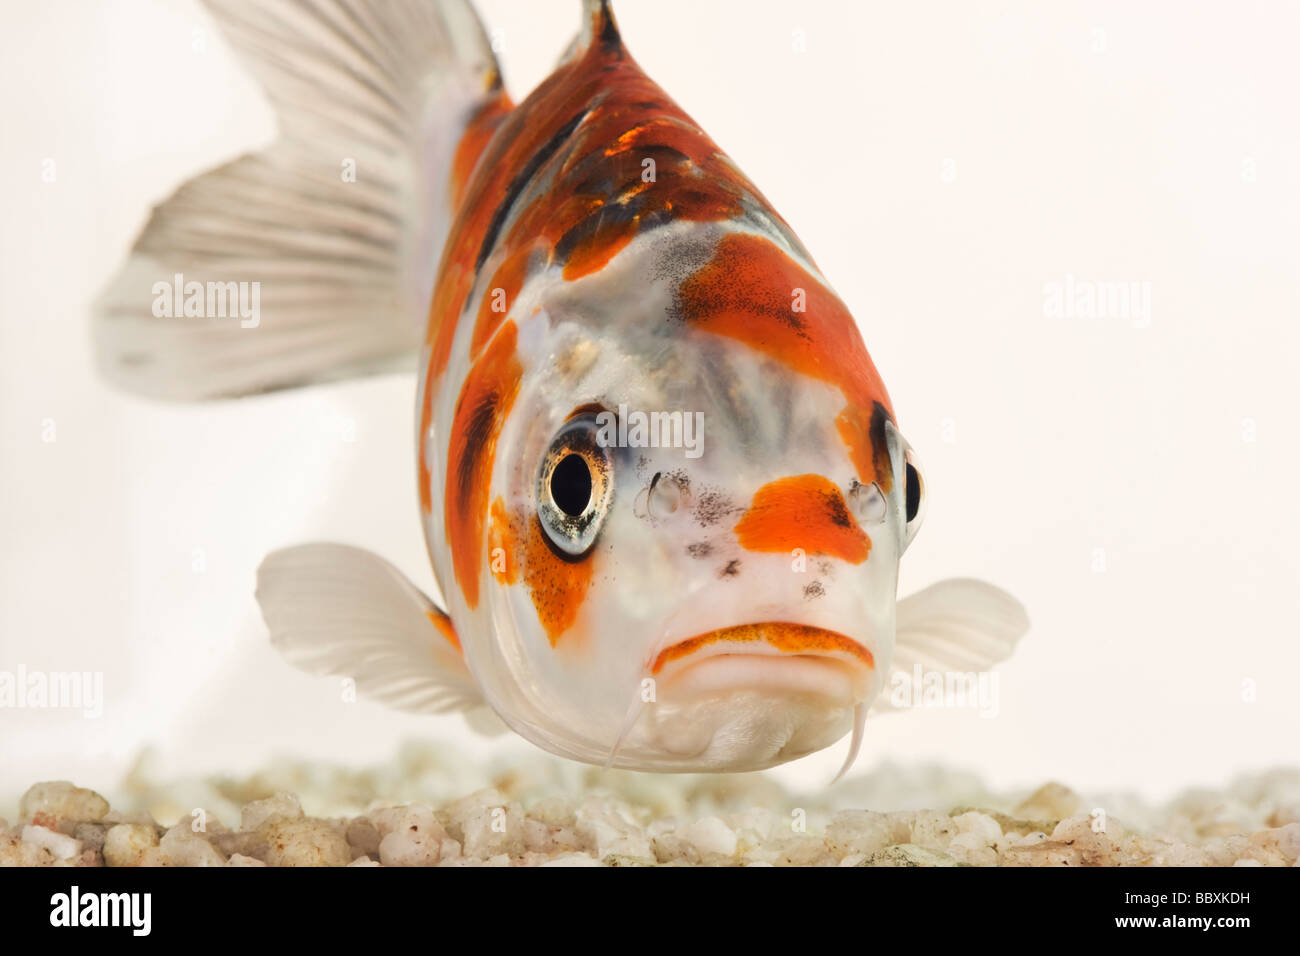 Uno spettacolare pesce Koi addomesticati varietà della carpa comune Cyprinus carpio allevati in diverse configurazioni di colore contro uno sfondo bianco Foto Stock